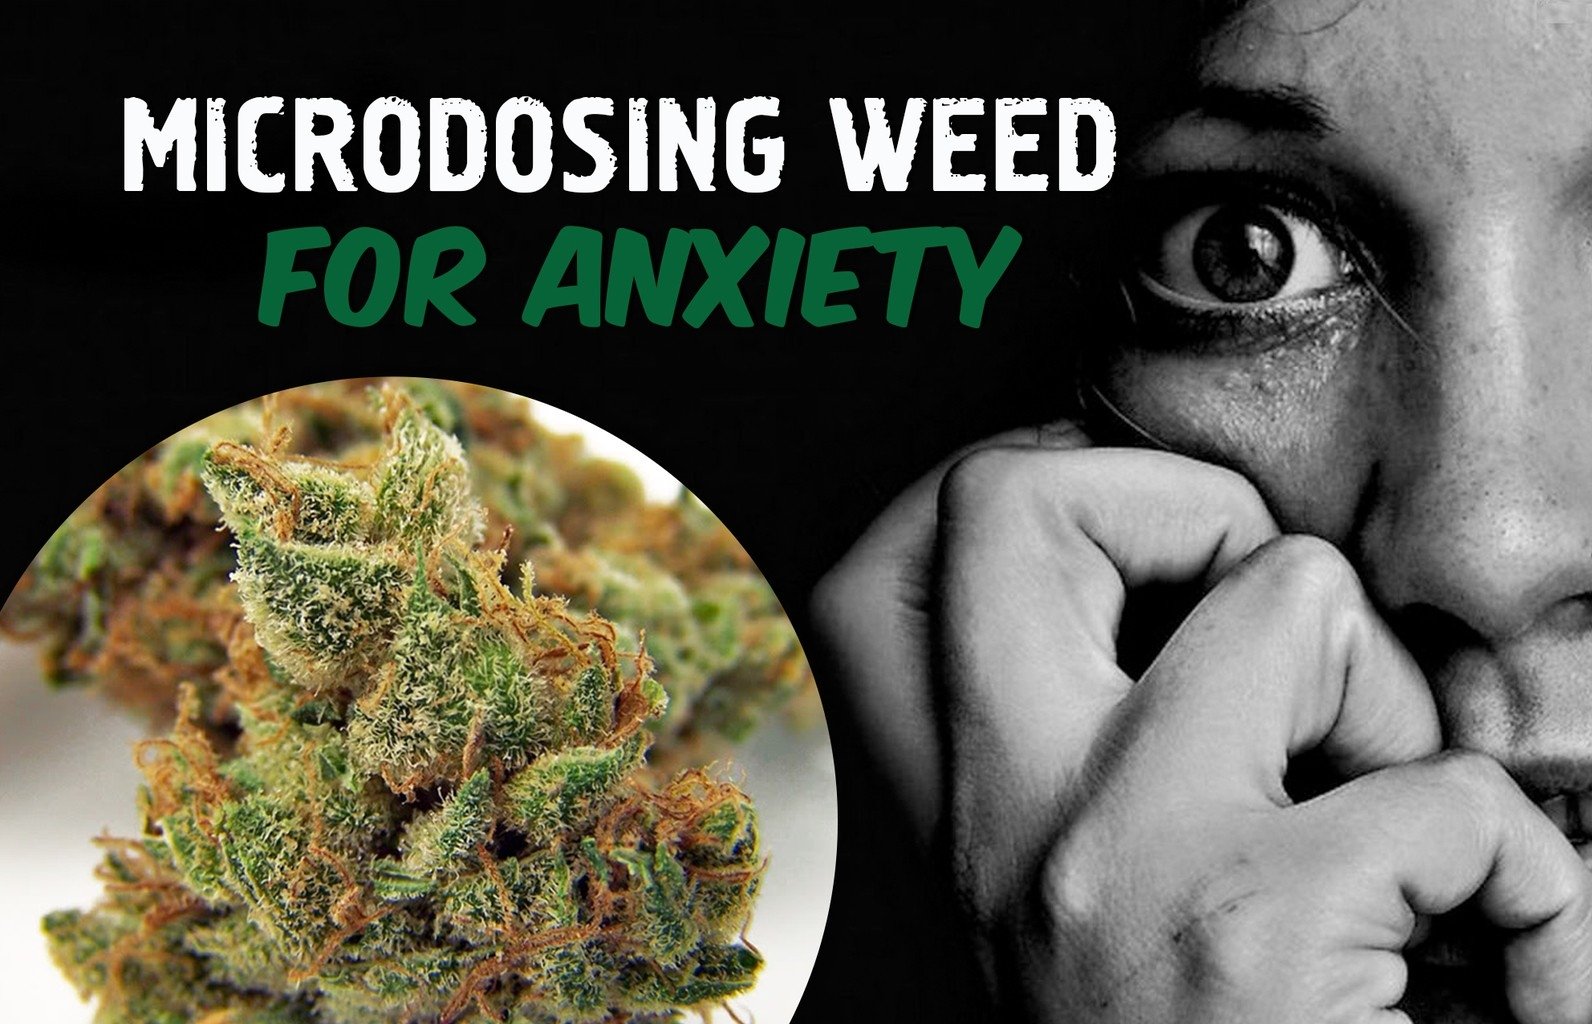 Does Marijuana Help With Anxiety